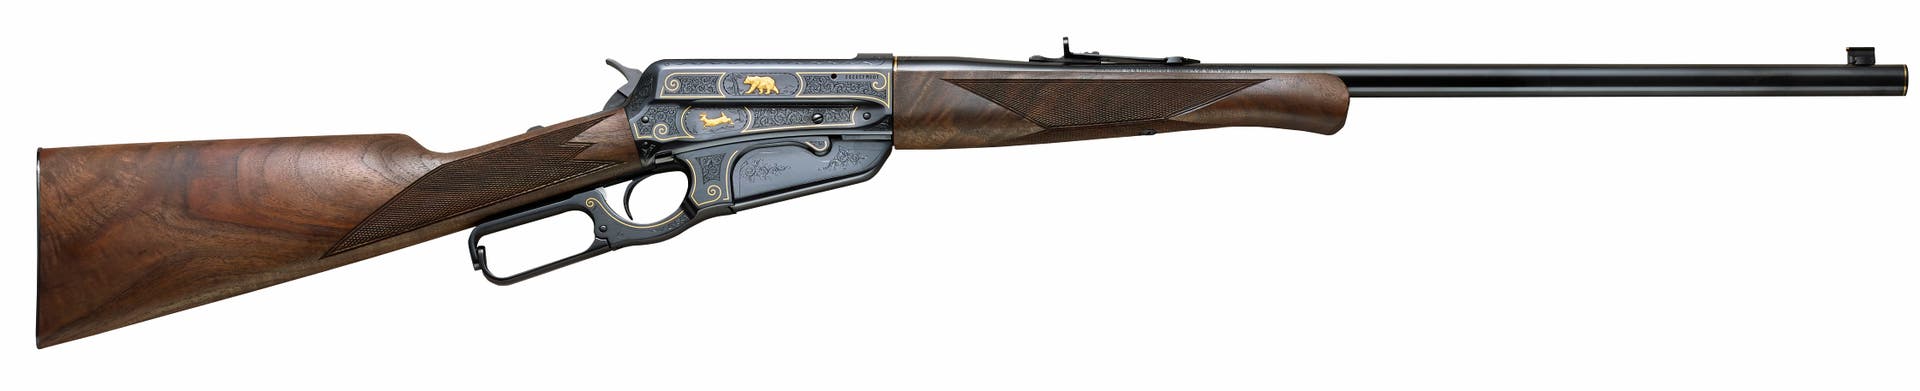 Model 1895 Rifle Cody Firearms Museum